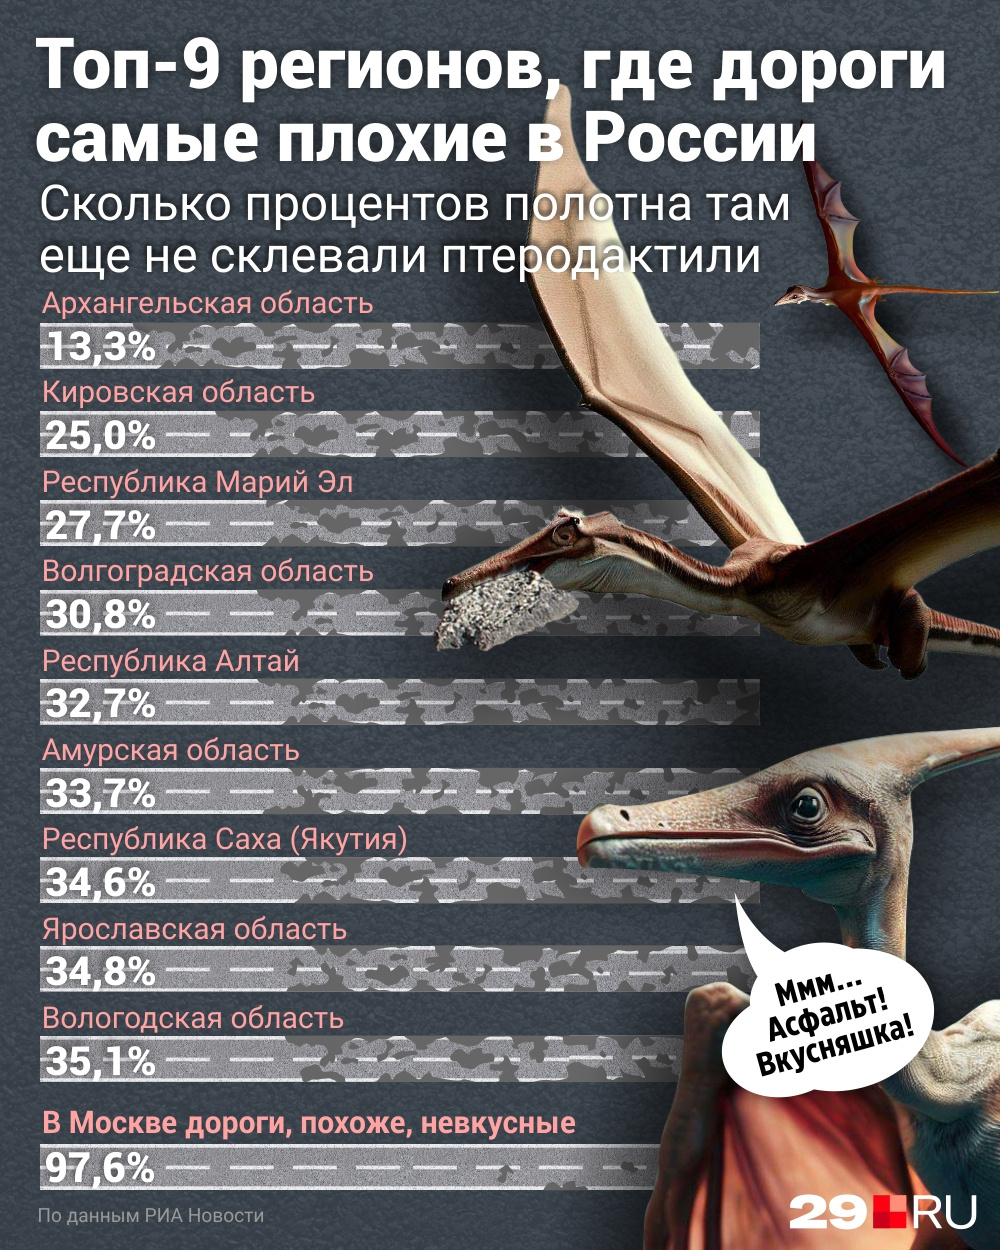 Шутку уже известного вам северянина Романа Крапивина мы использовали при создании этой инфографики по официальным данным